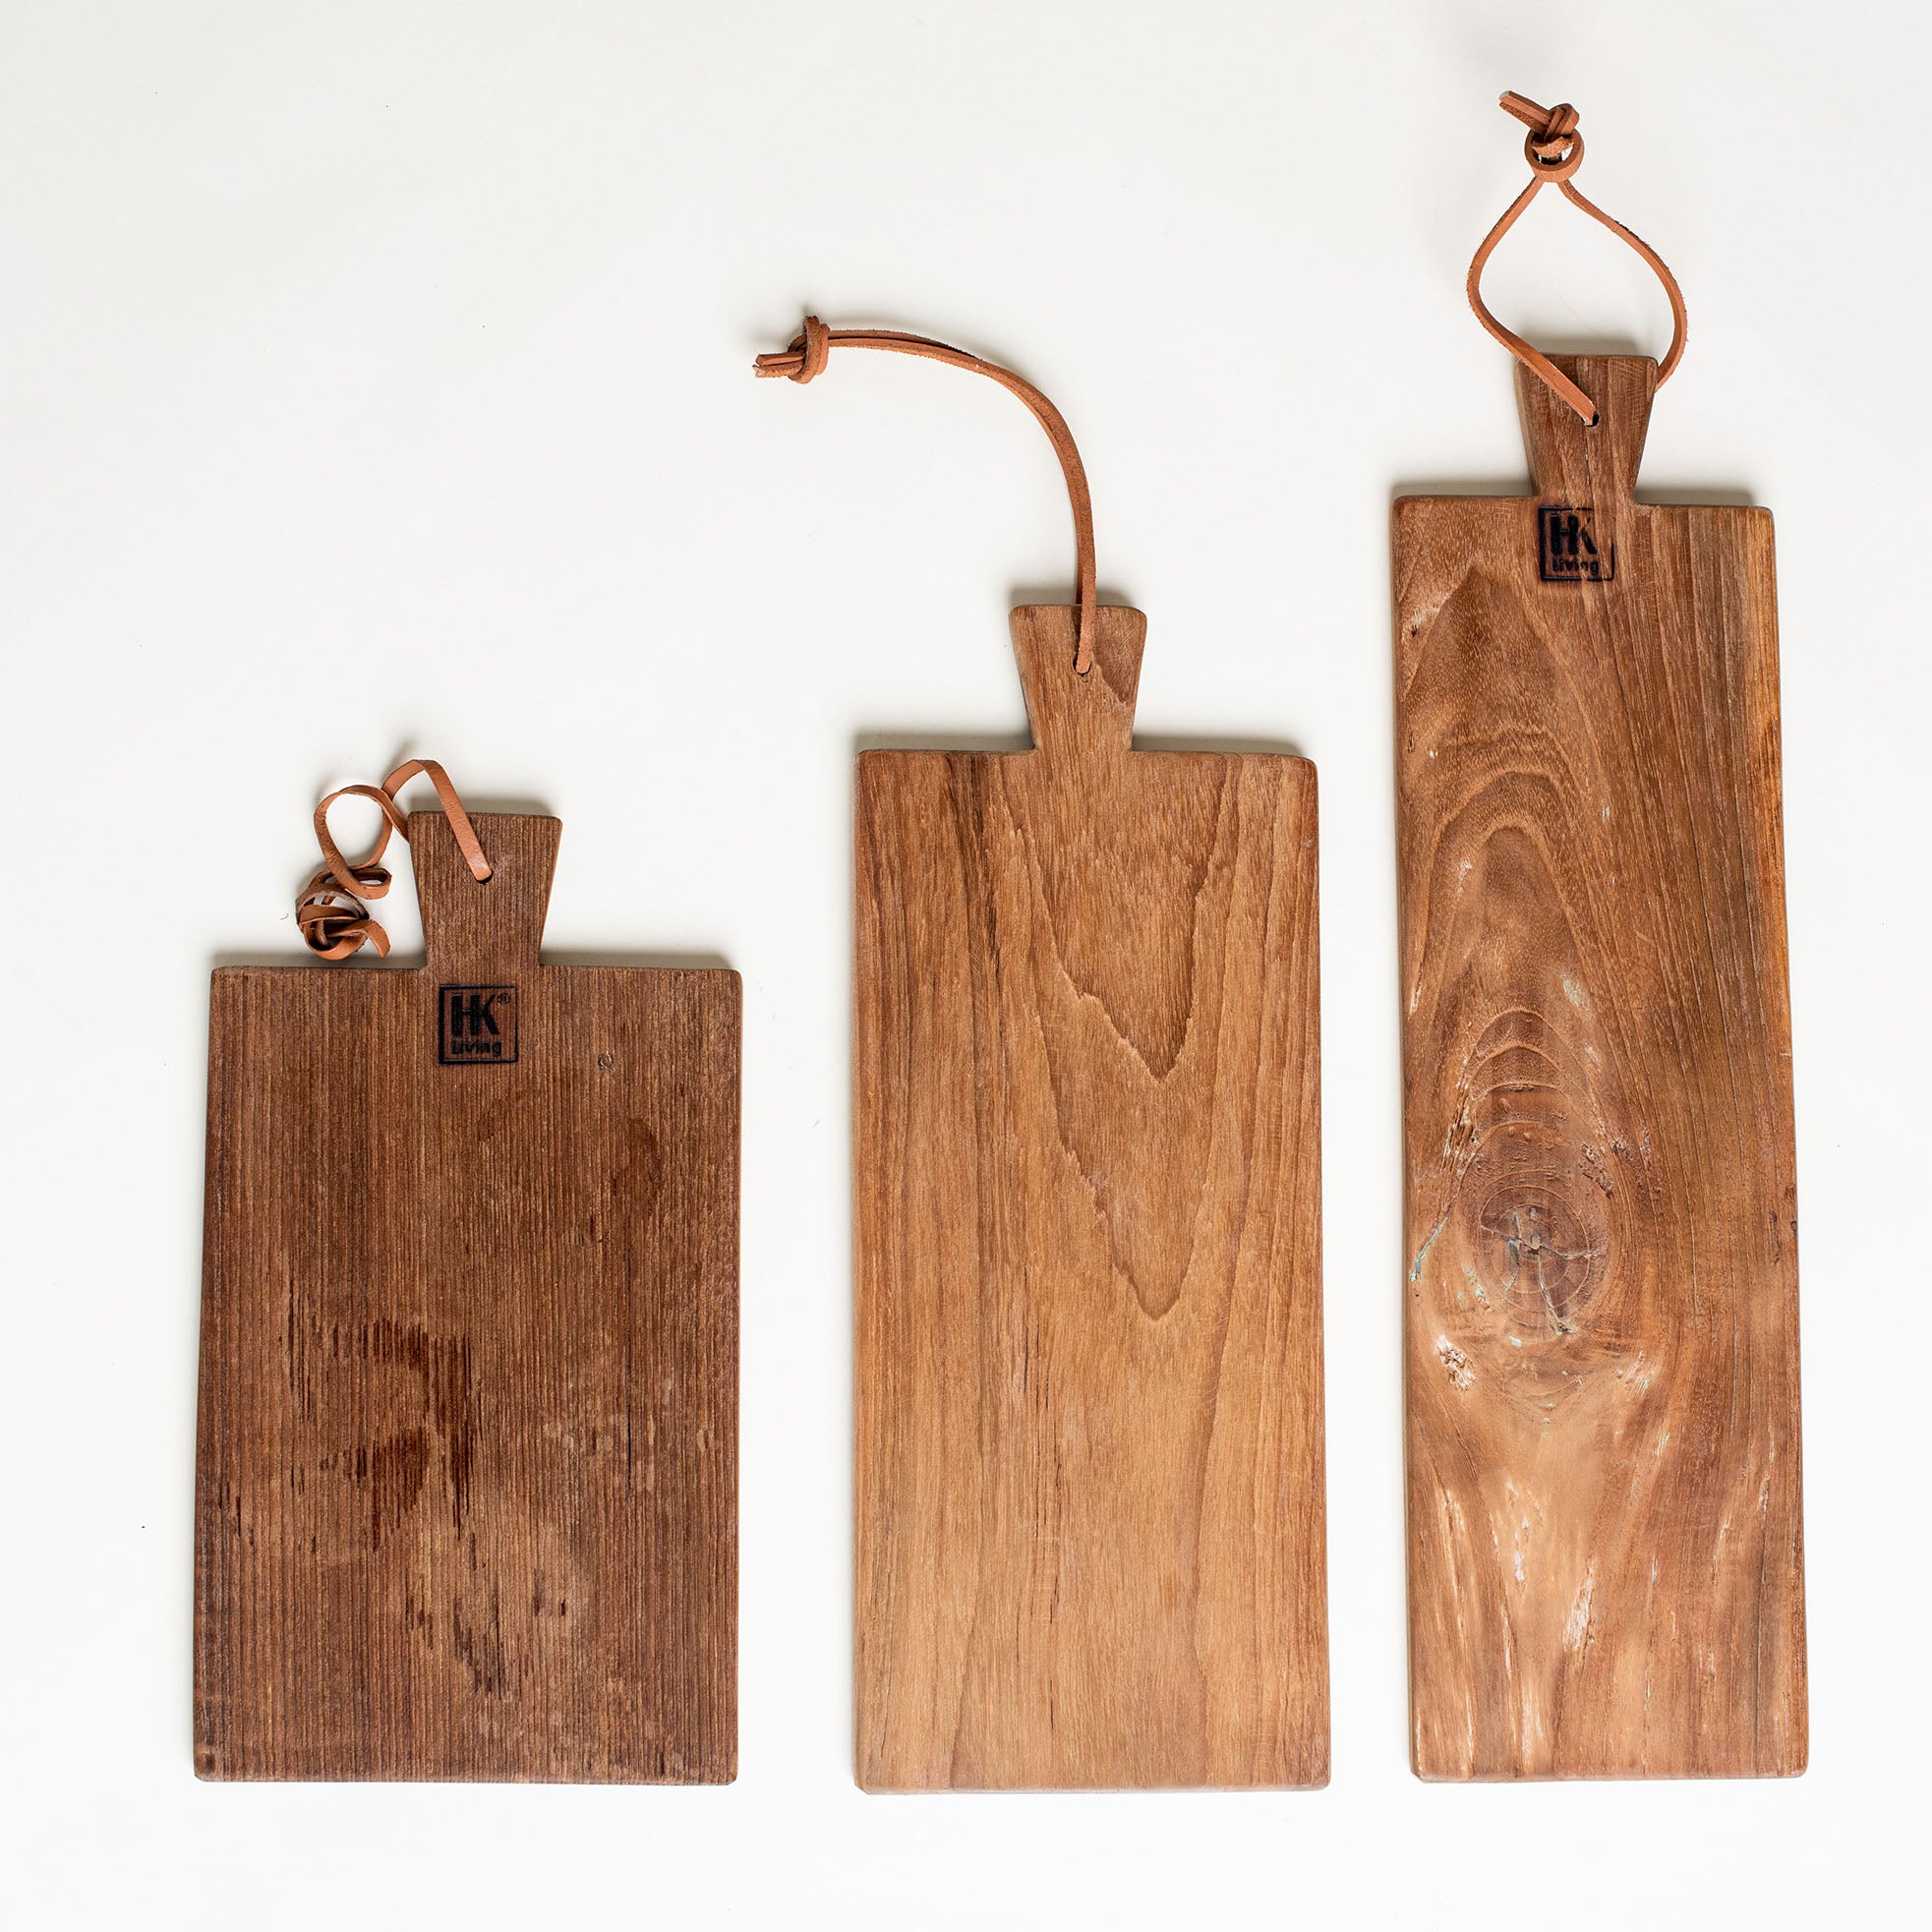 Drei Schneidebretter aus Teak Holz im Stil der 70er Jahre in verschiedenen Größen.